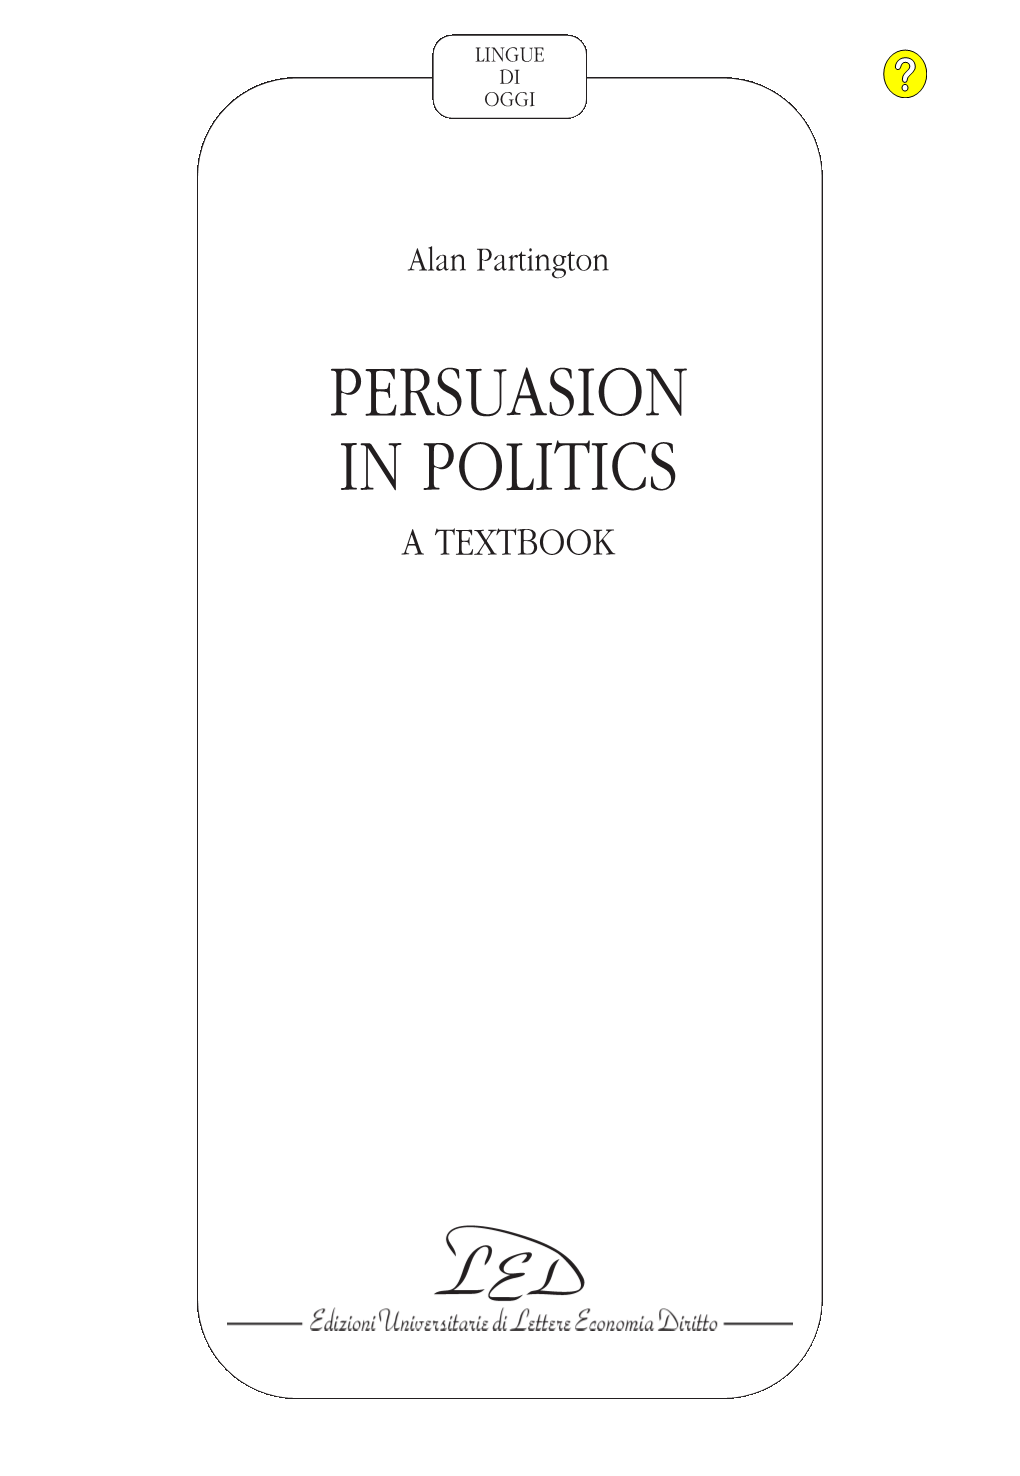 Persuasion in Politics: a Textbook